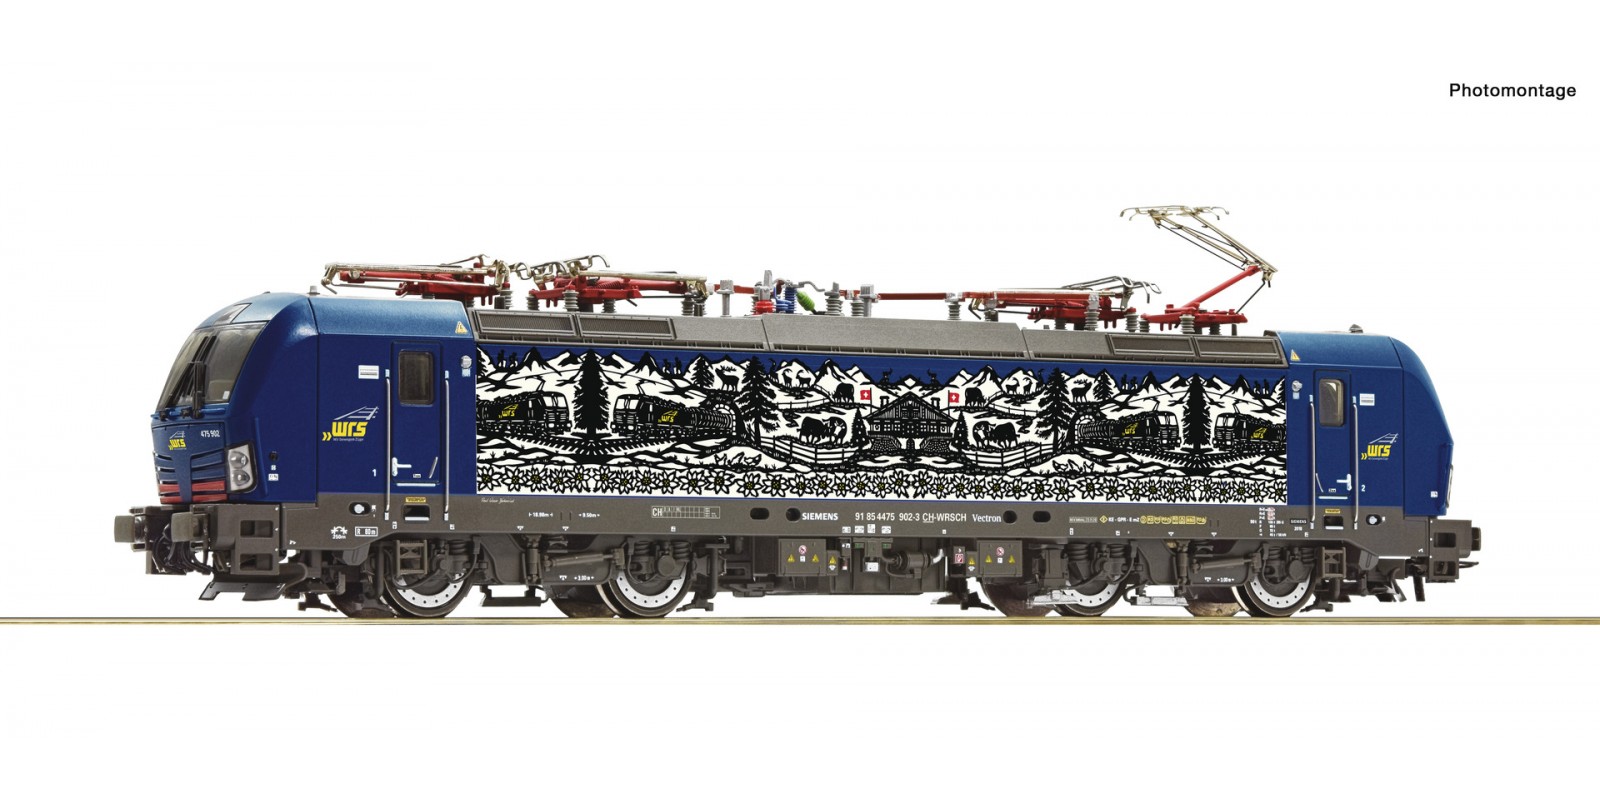 RO71963 Electric locomotive 475 902-3, WRS